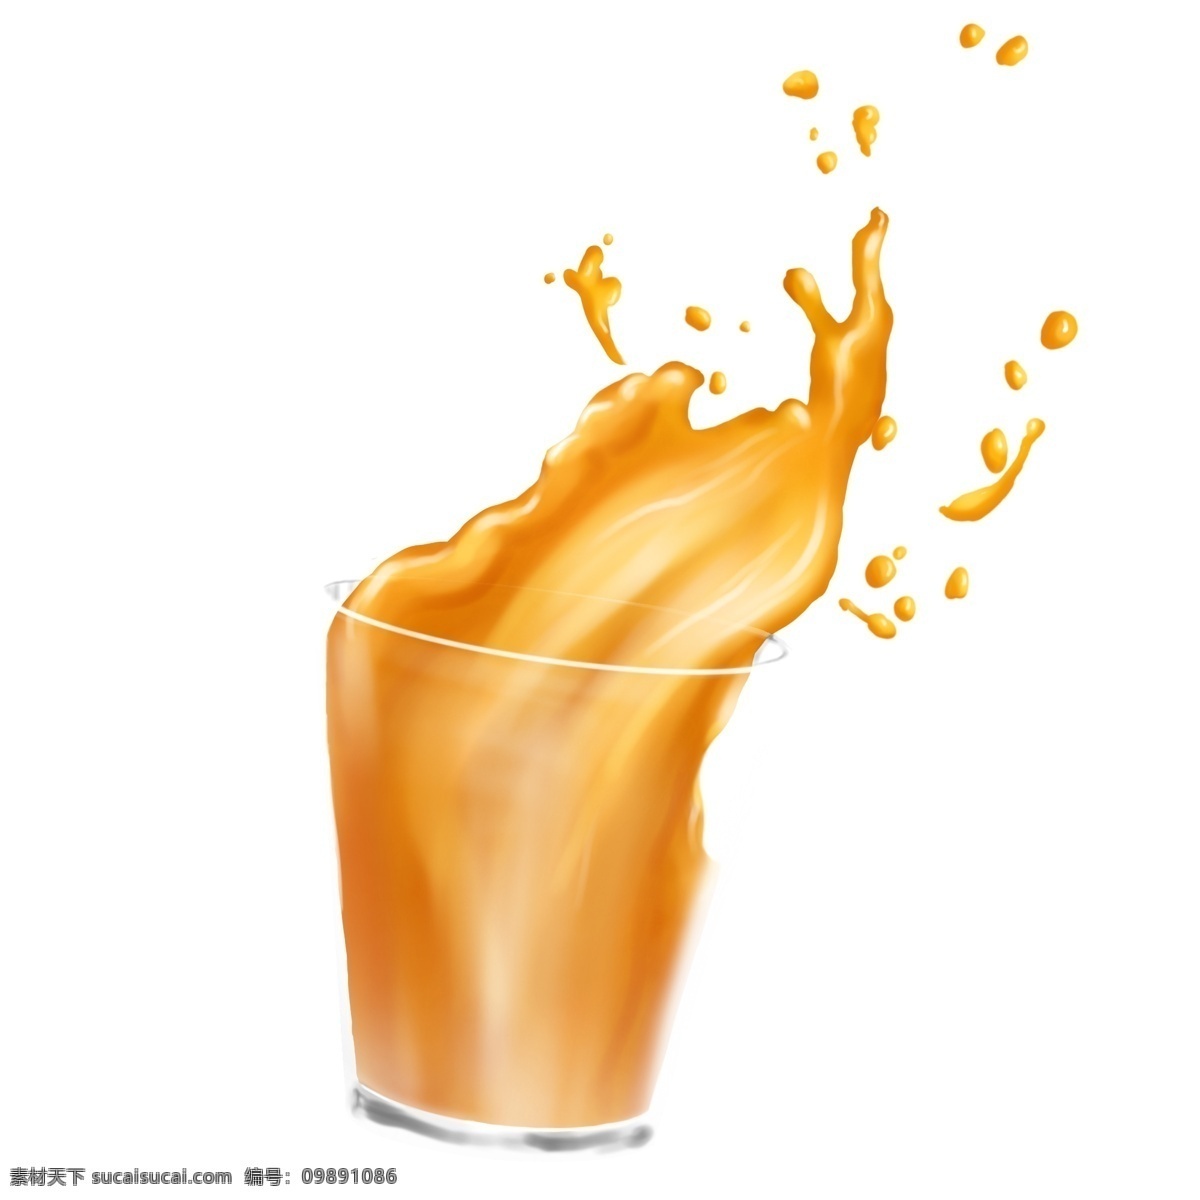 果汁 橙汁 玻璃杯 溅 洒 溅洒 果粒橙 新鲜果汁 美味果汁 果汁溢出 透明底 免抠 海报装饰 原创